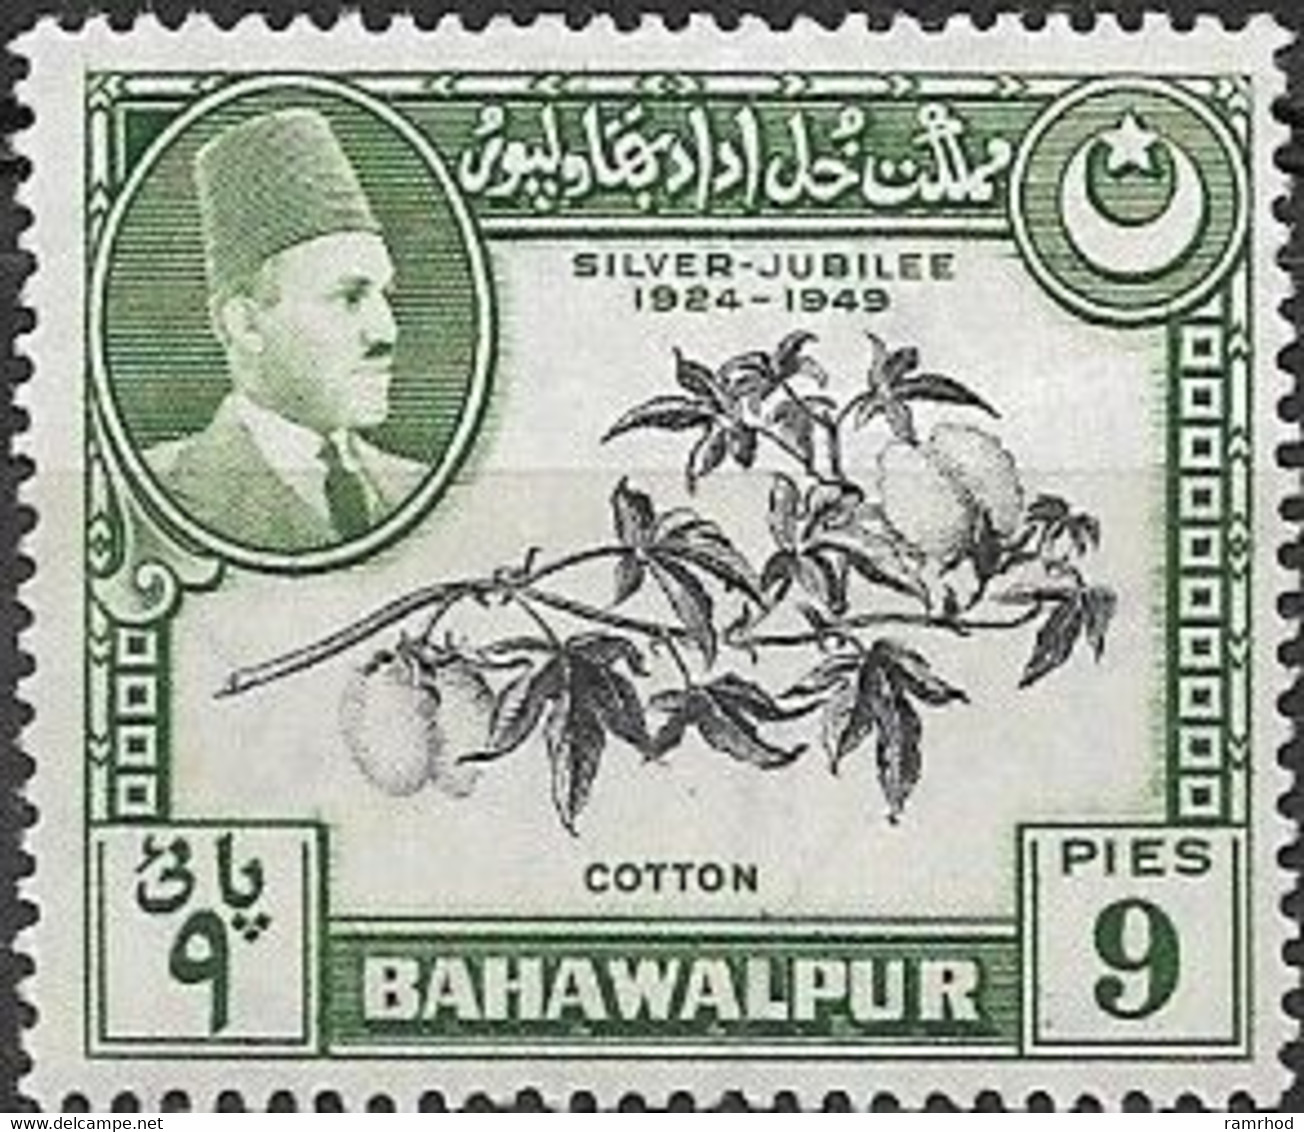 BAHAWALPUR 1949 Silver Jubilee Of Accession Of The Amir - 9p - Cotton MH - Bahawalpur